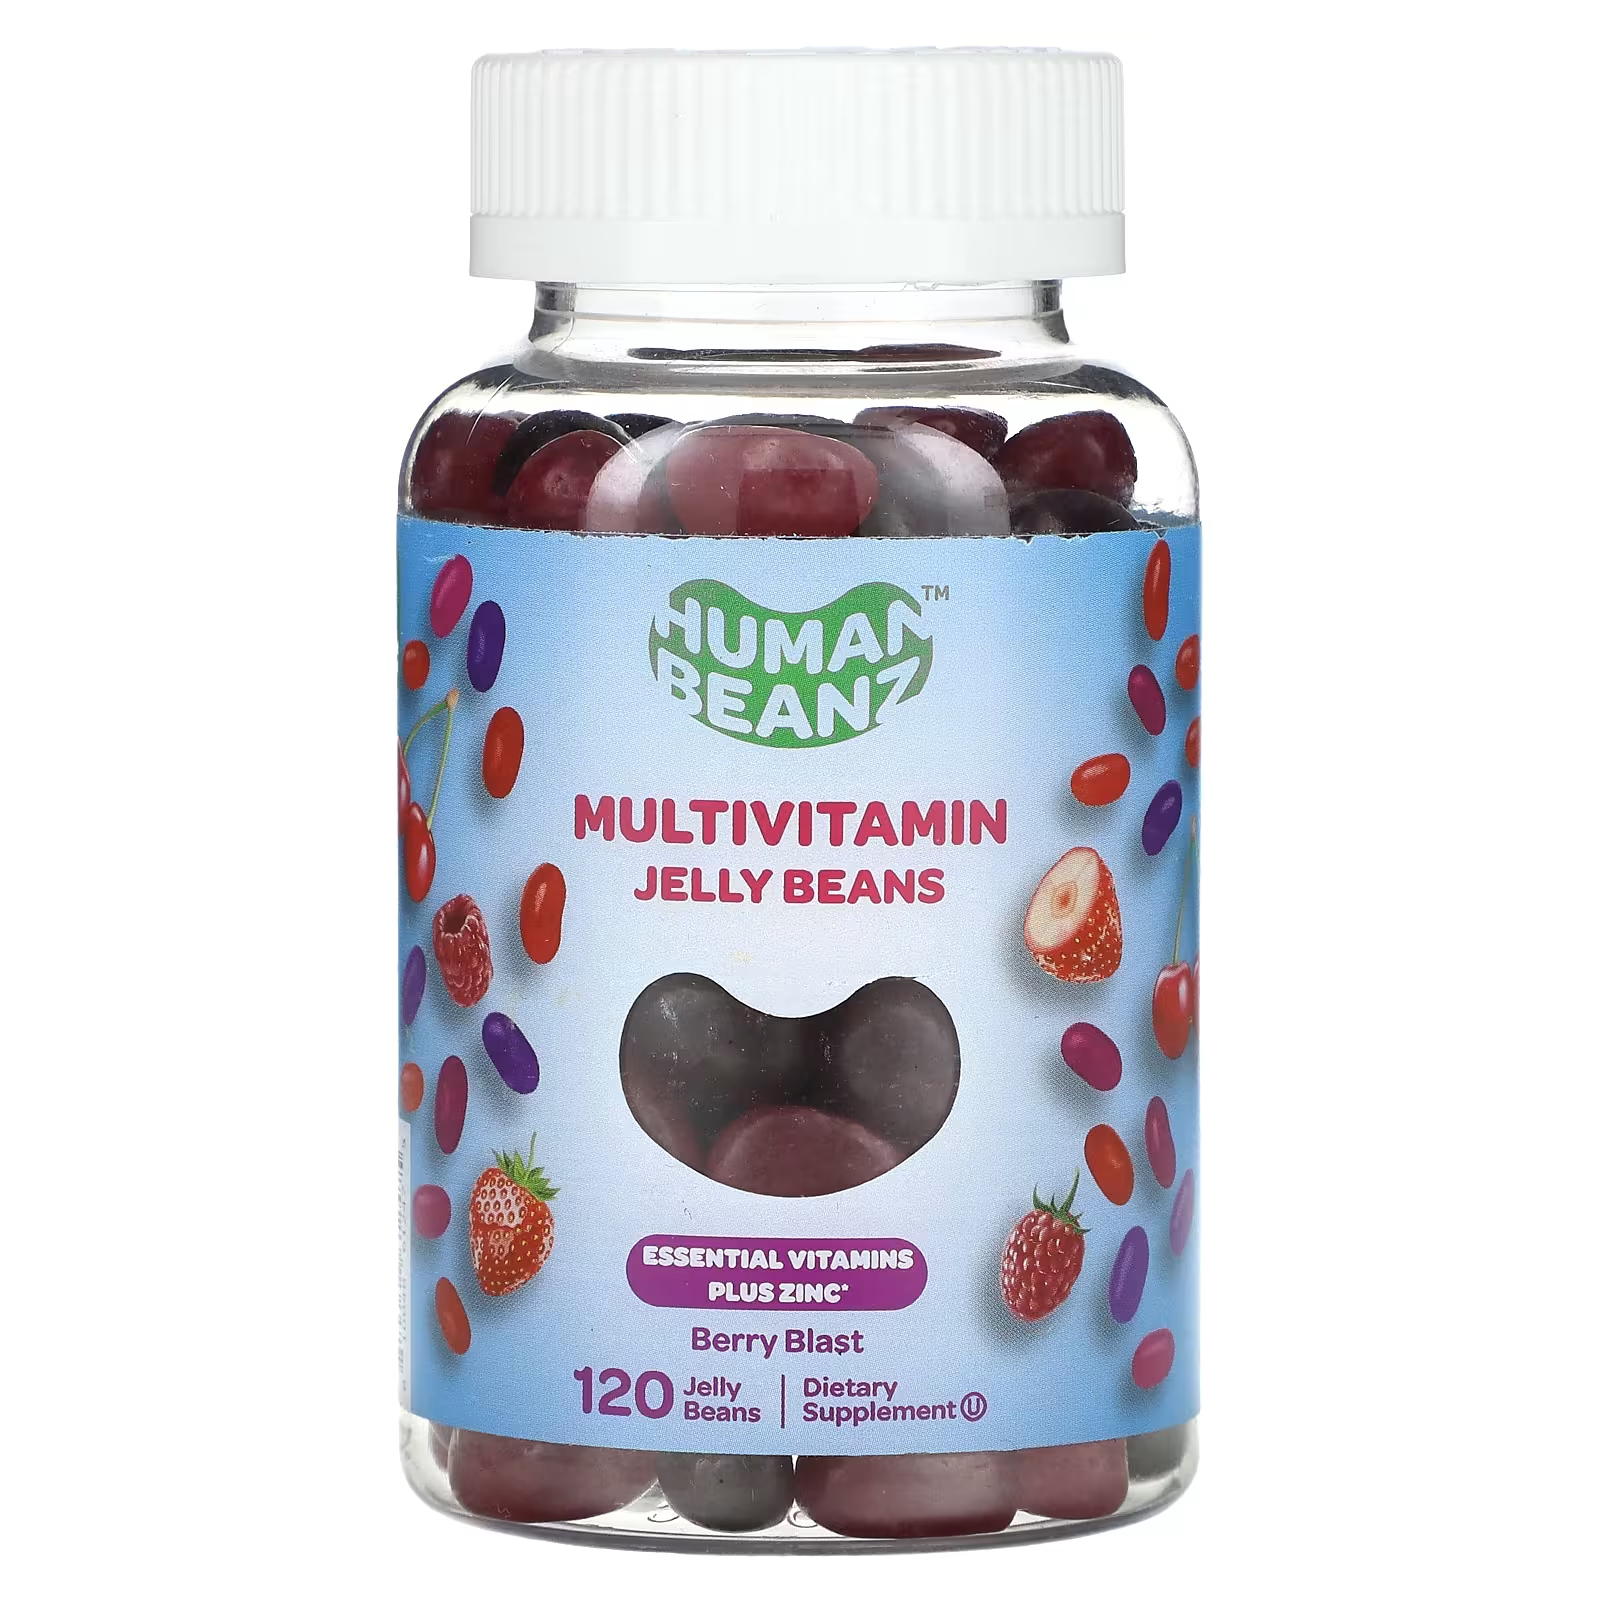 Мультивитаминная добавка Human Beanz Berry Blast, 120 жевательных конфет flintstones gummies мультивитаминная добавка для детей 150 жевательных конфет